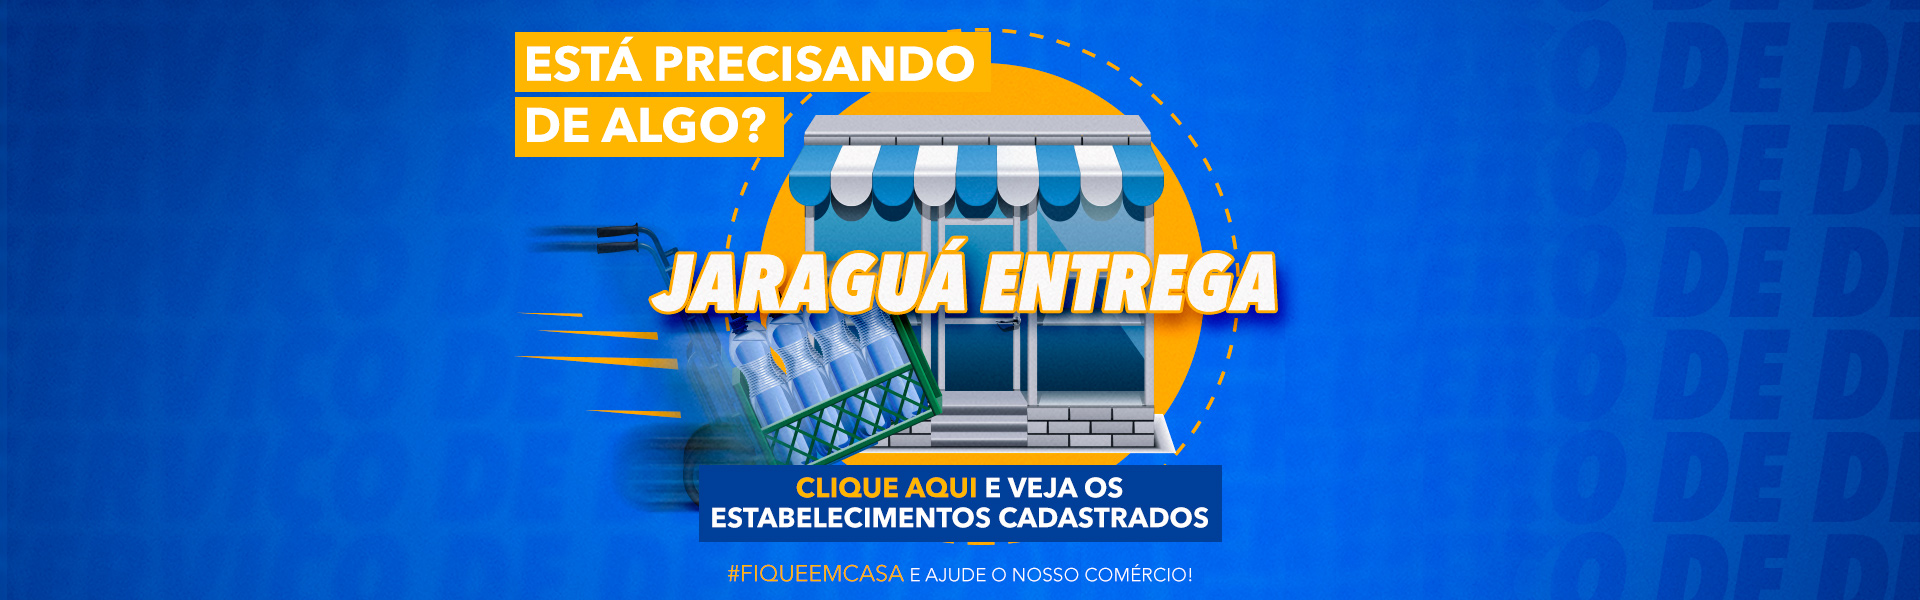 Delivery - Jaraguá Entrega